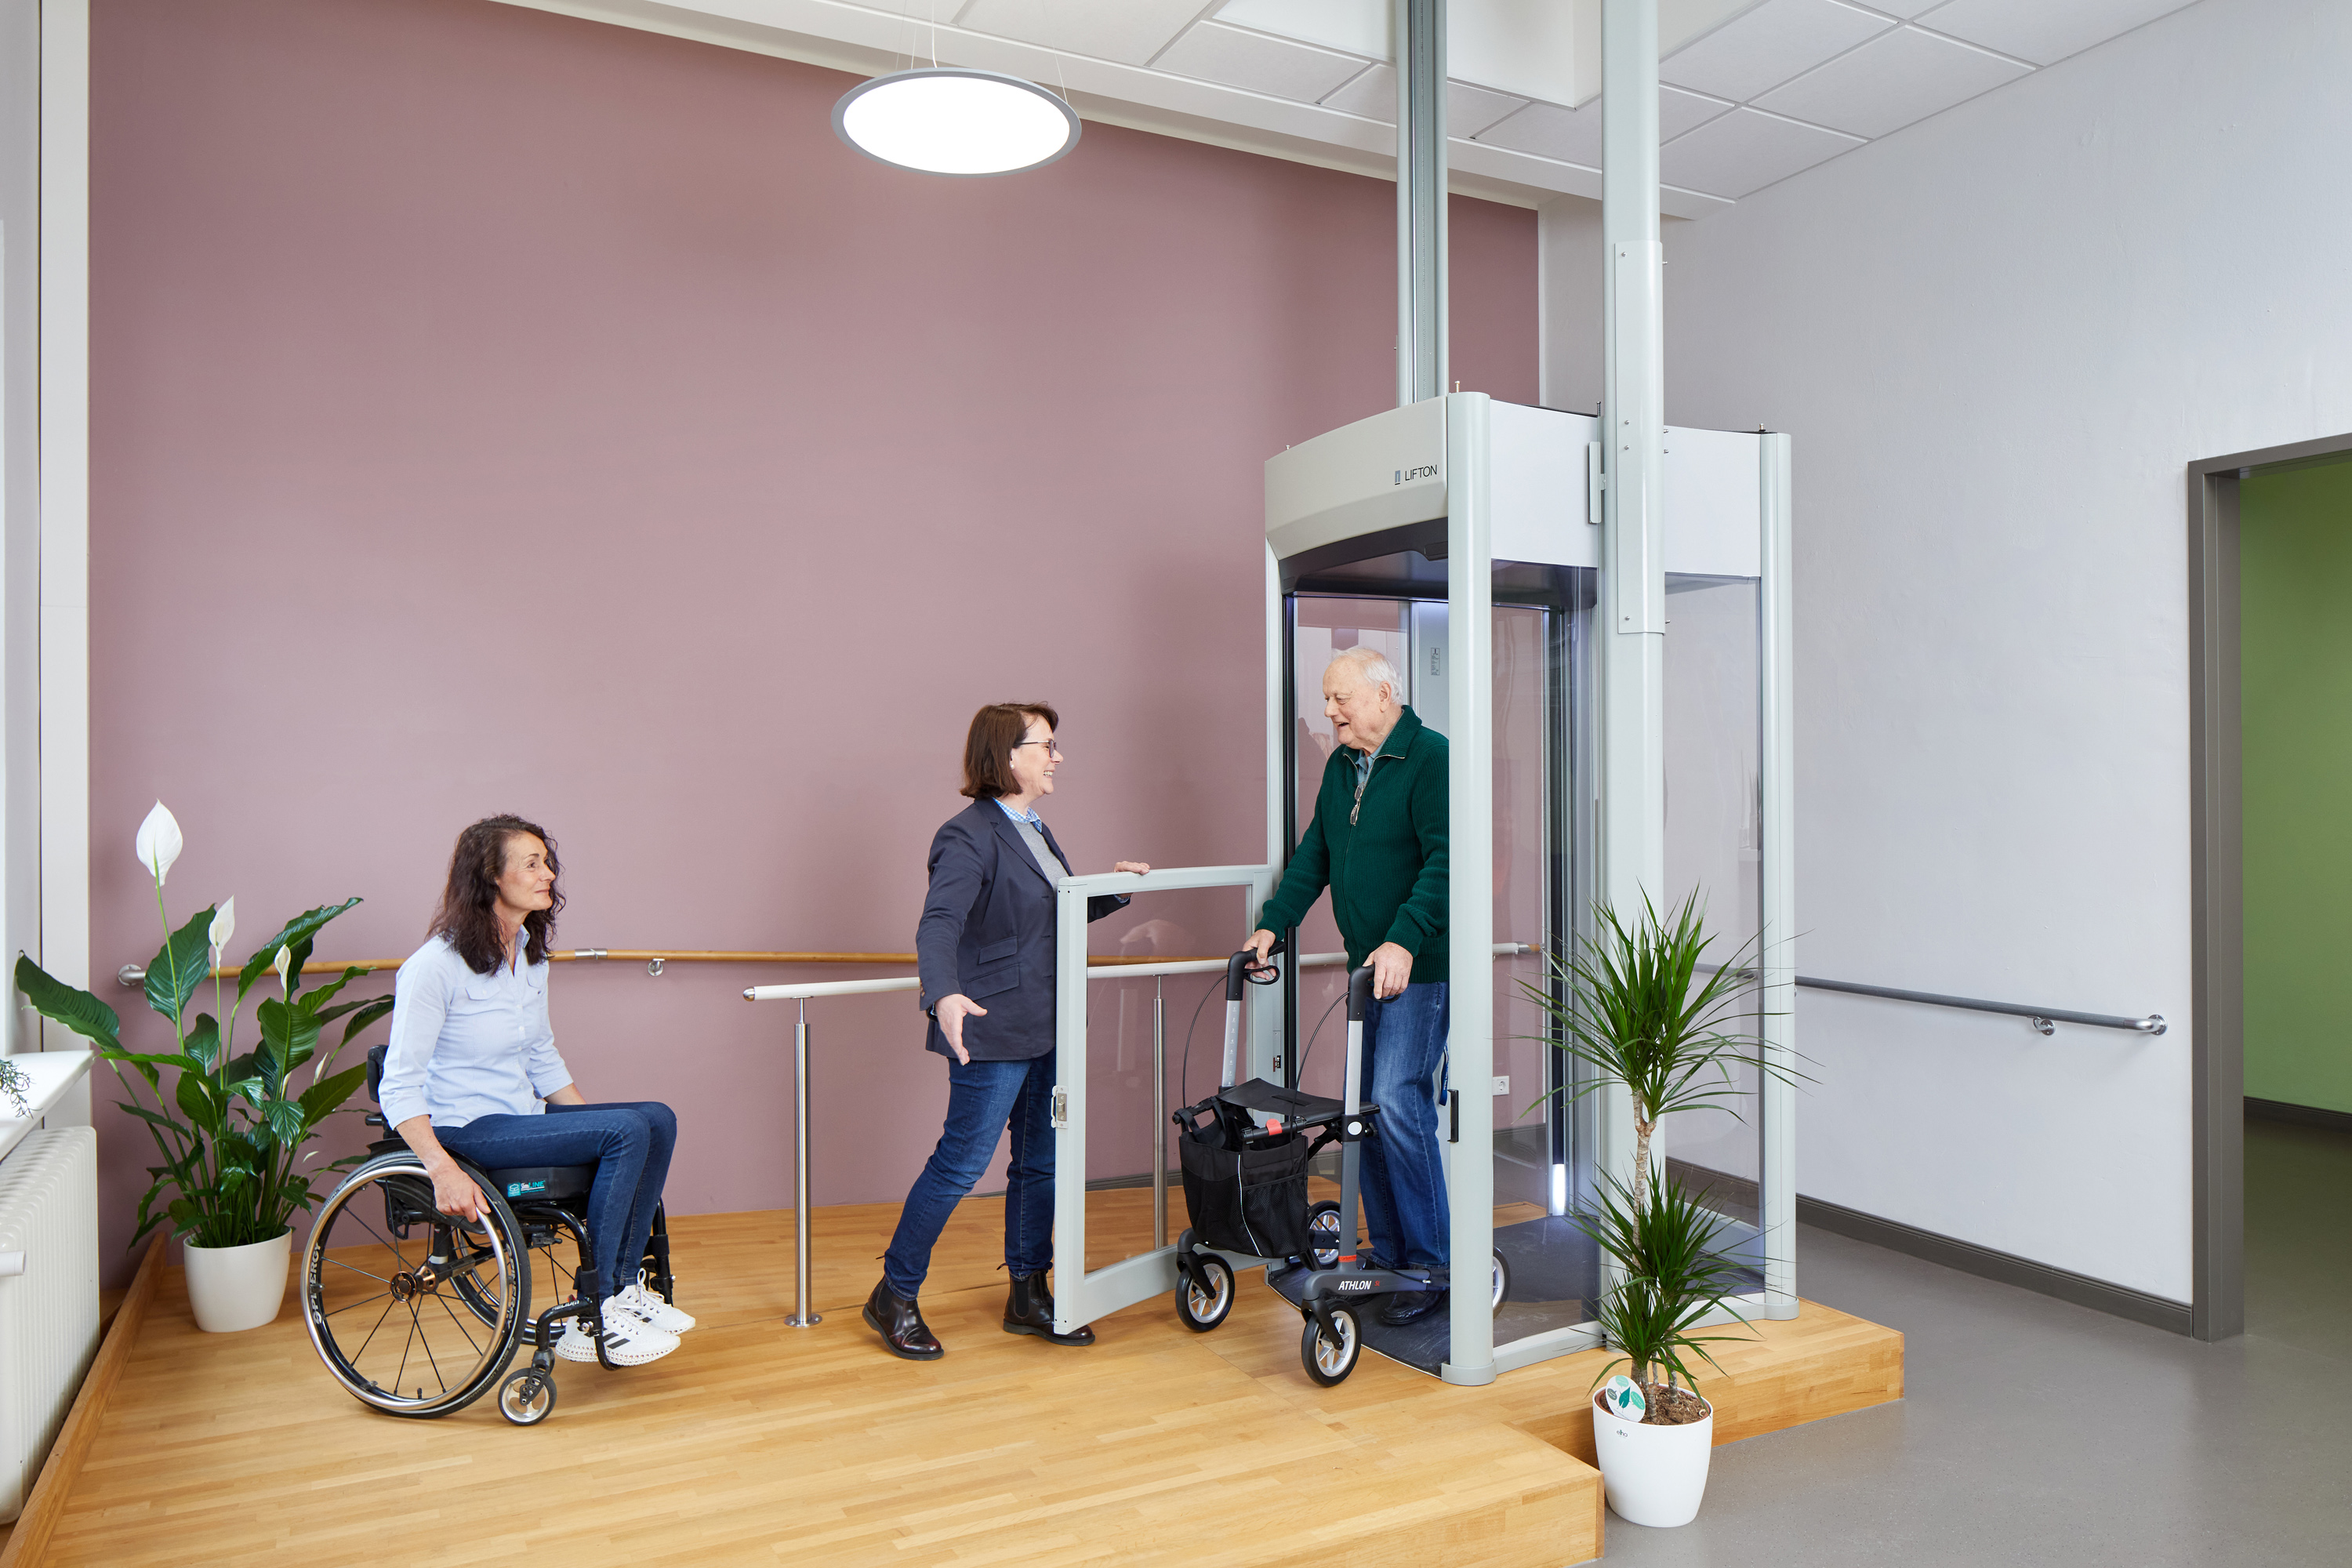 Das Bild zeigt einen Ausstellungsraum mit einem Homelift. Aus dem Lift steigt ein Besucher mit Rollator. Vor dem Lift steht eine Frau im Rollstuhl.